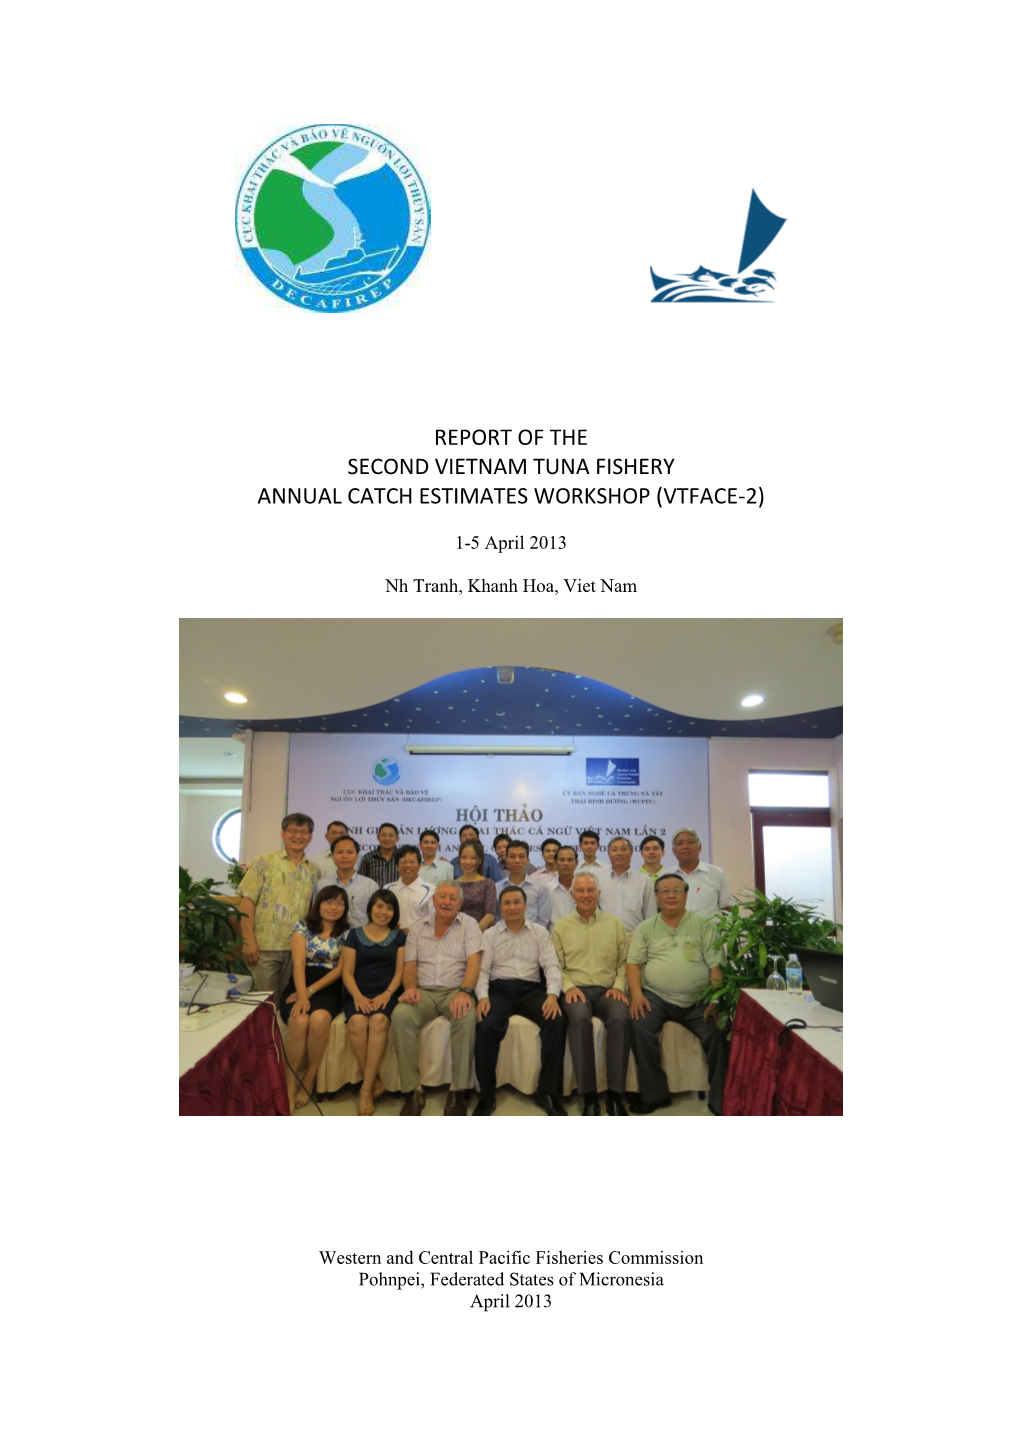 VTFACE-2 Second Vietnam Annual Catch Estimates WORKSHOP (Final)